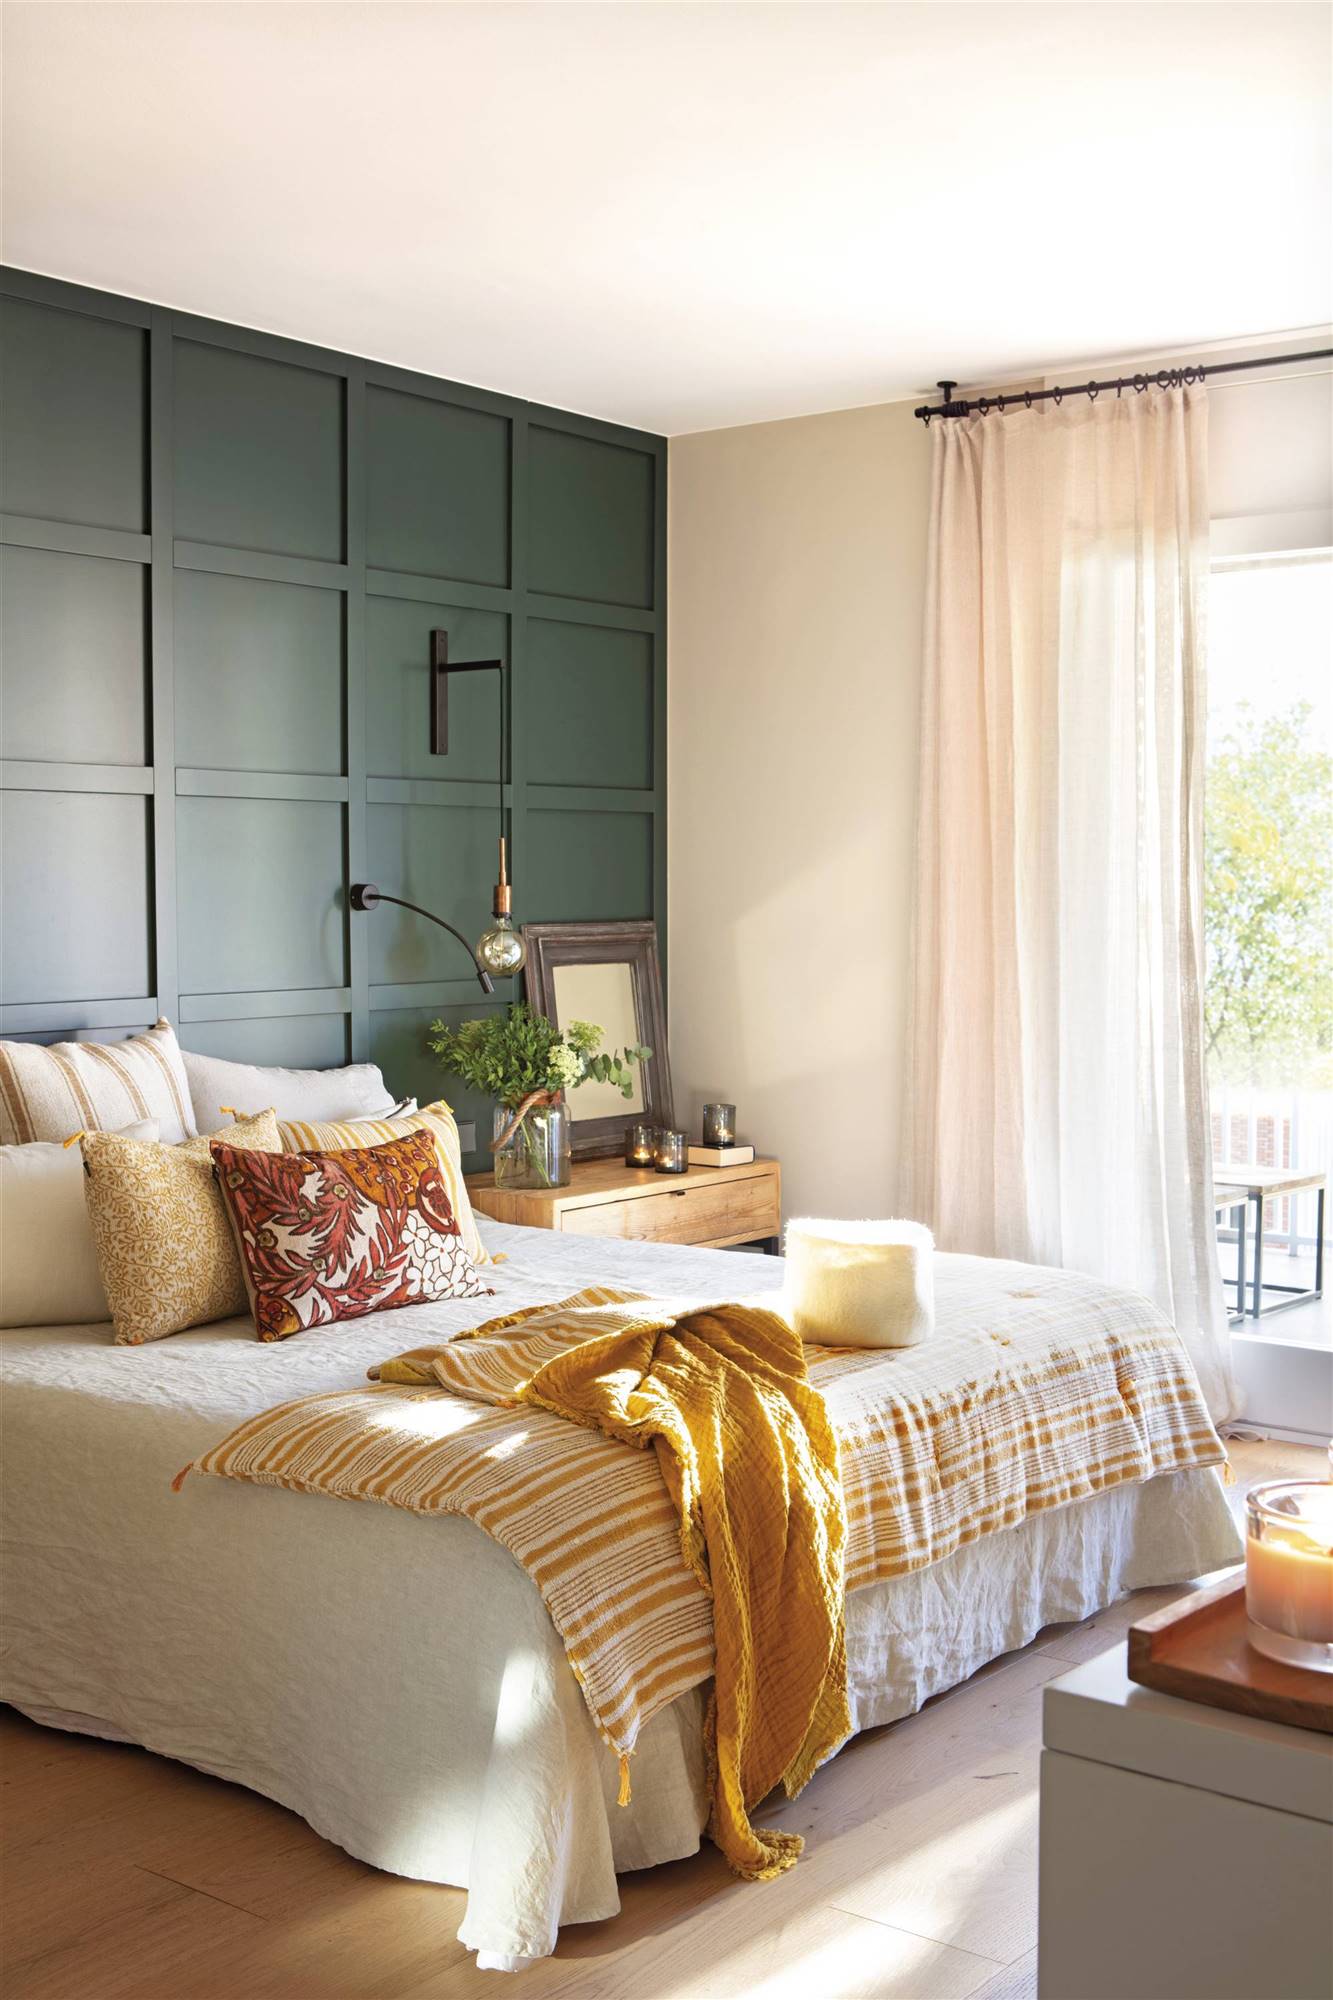 00533467 Dormitorio con cabecero de madera pintado en verde